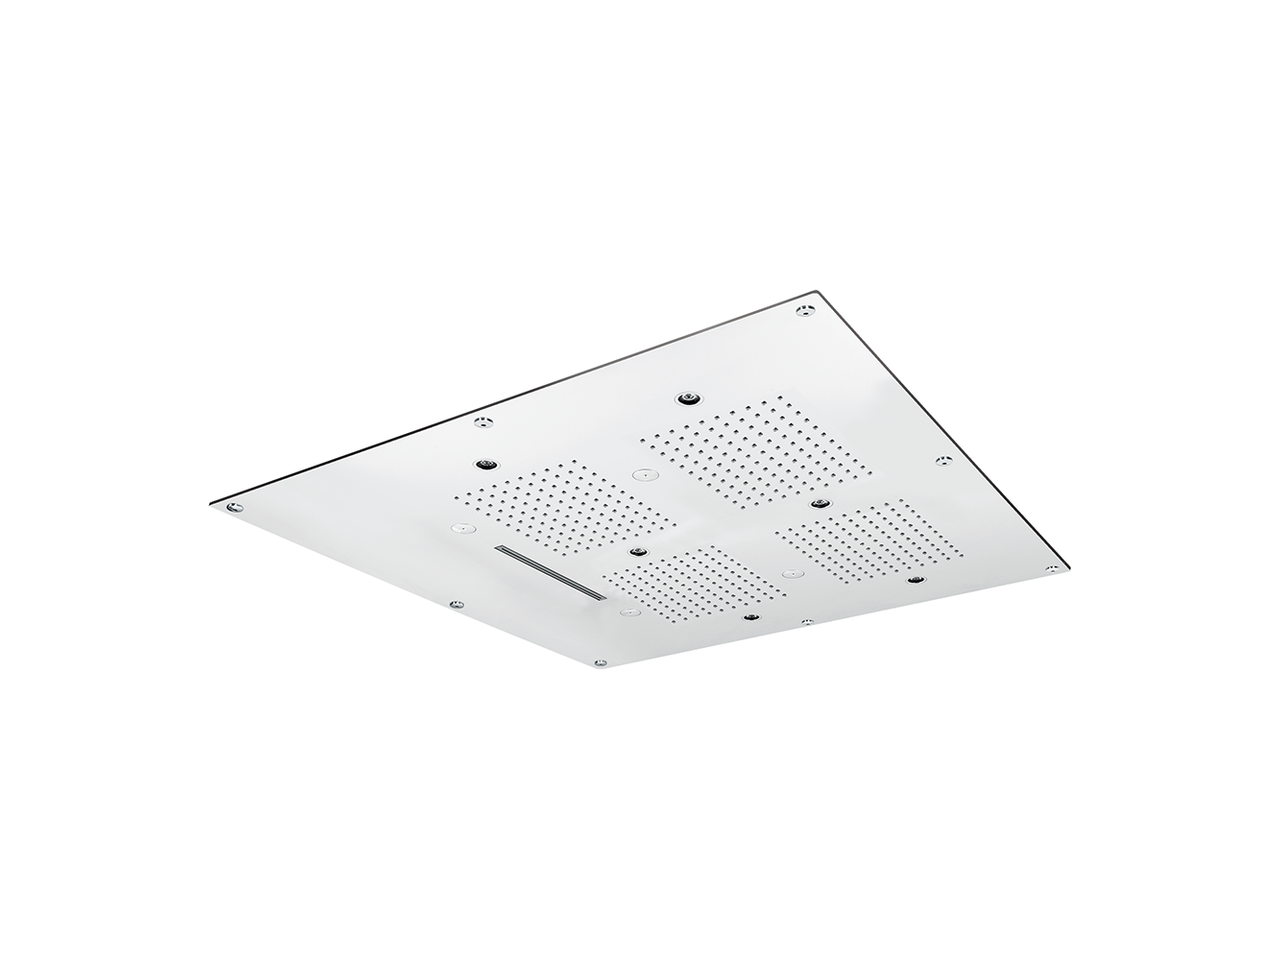 HUBER600x600mm stainless steel false ceiling showerhead ZEN